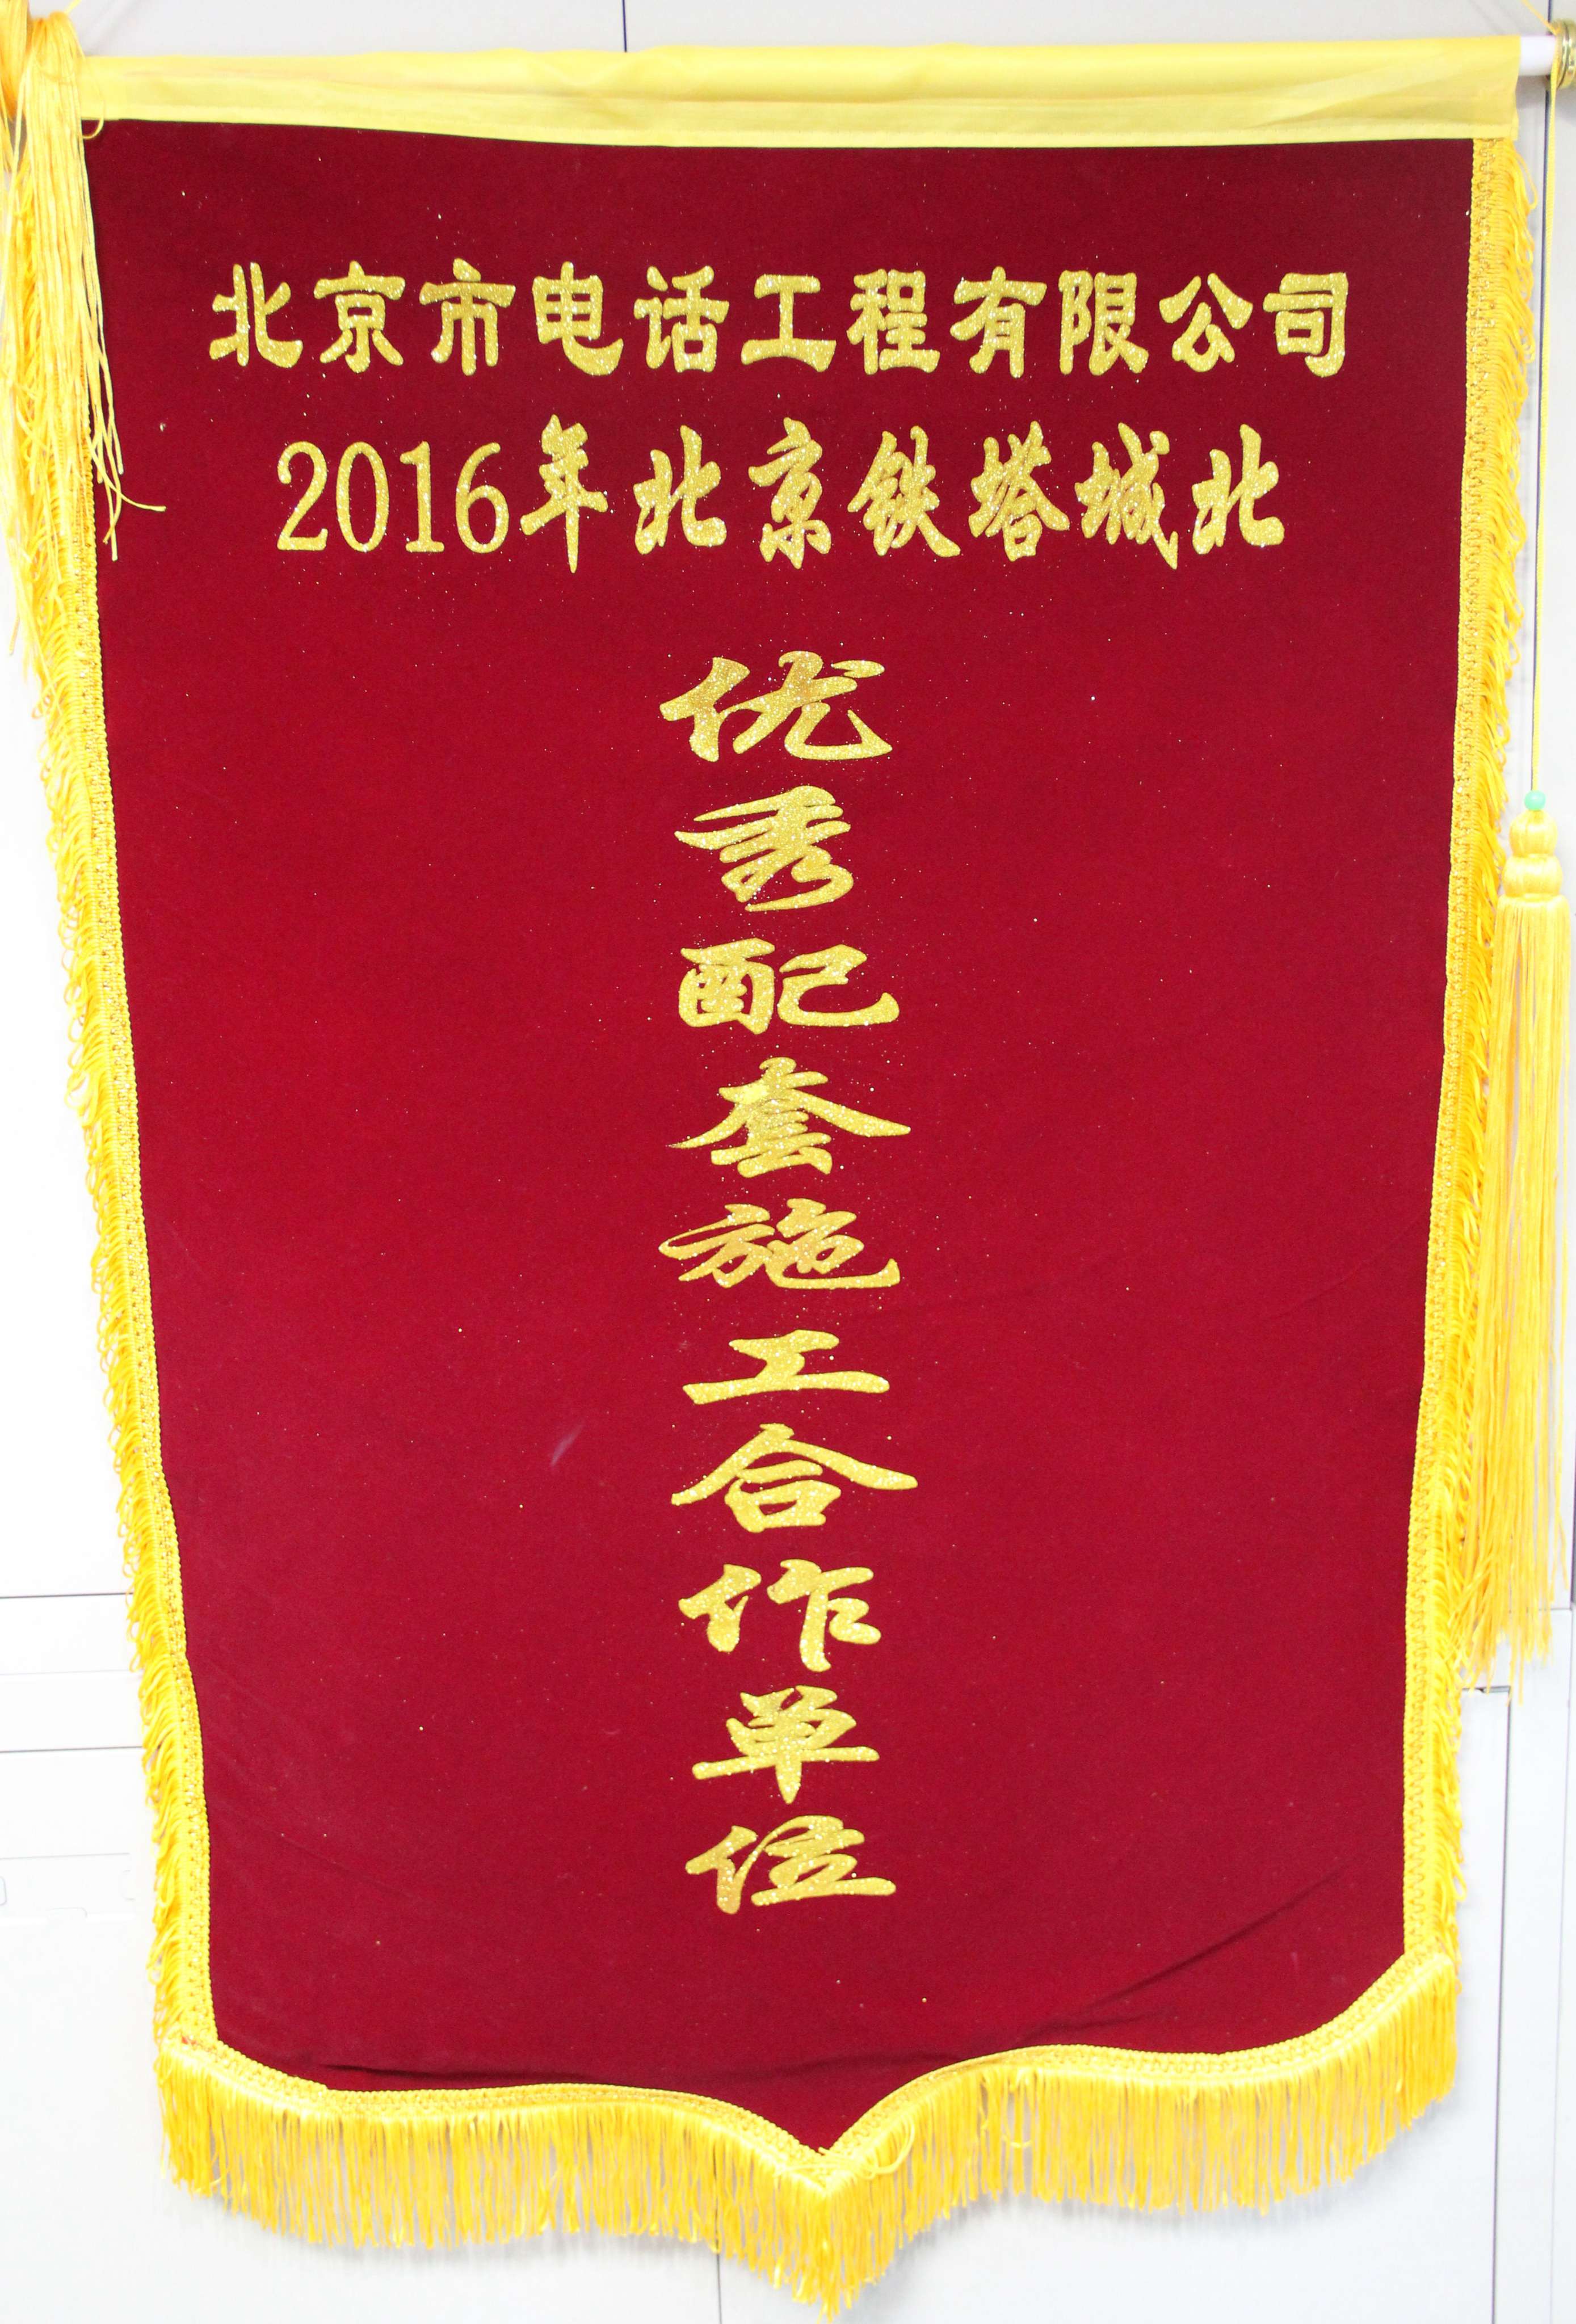 2016年北京铁塔城北 优秀配套施工合作单位